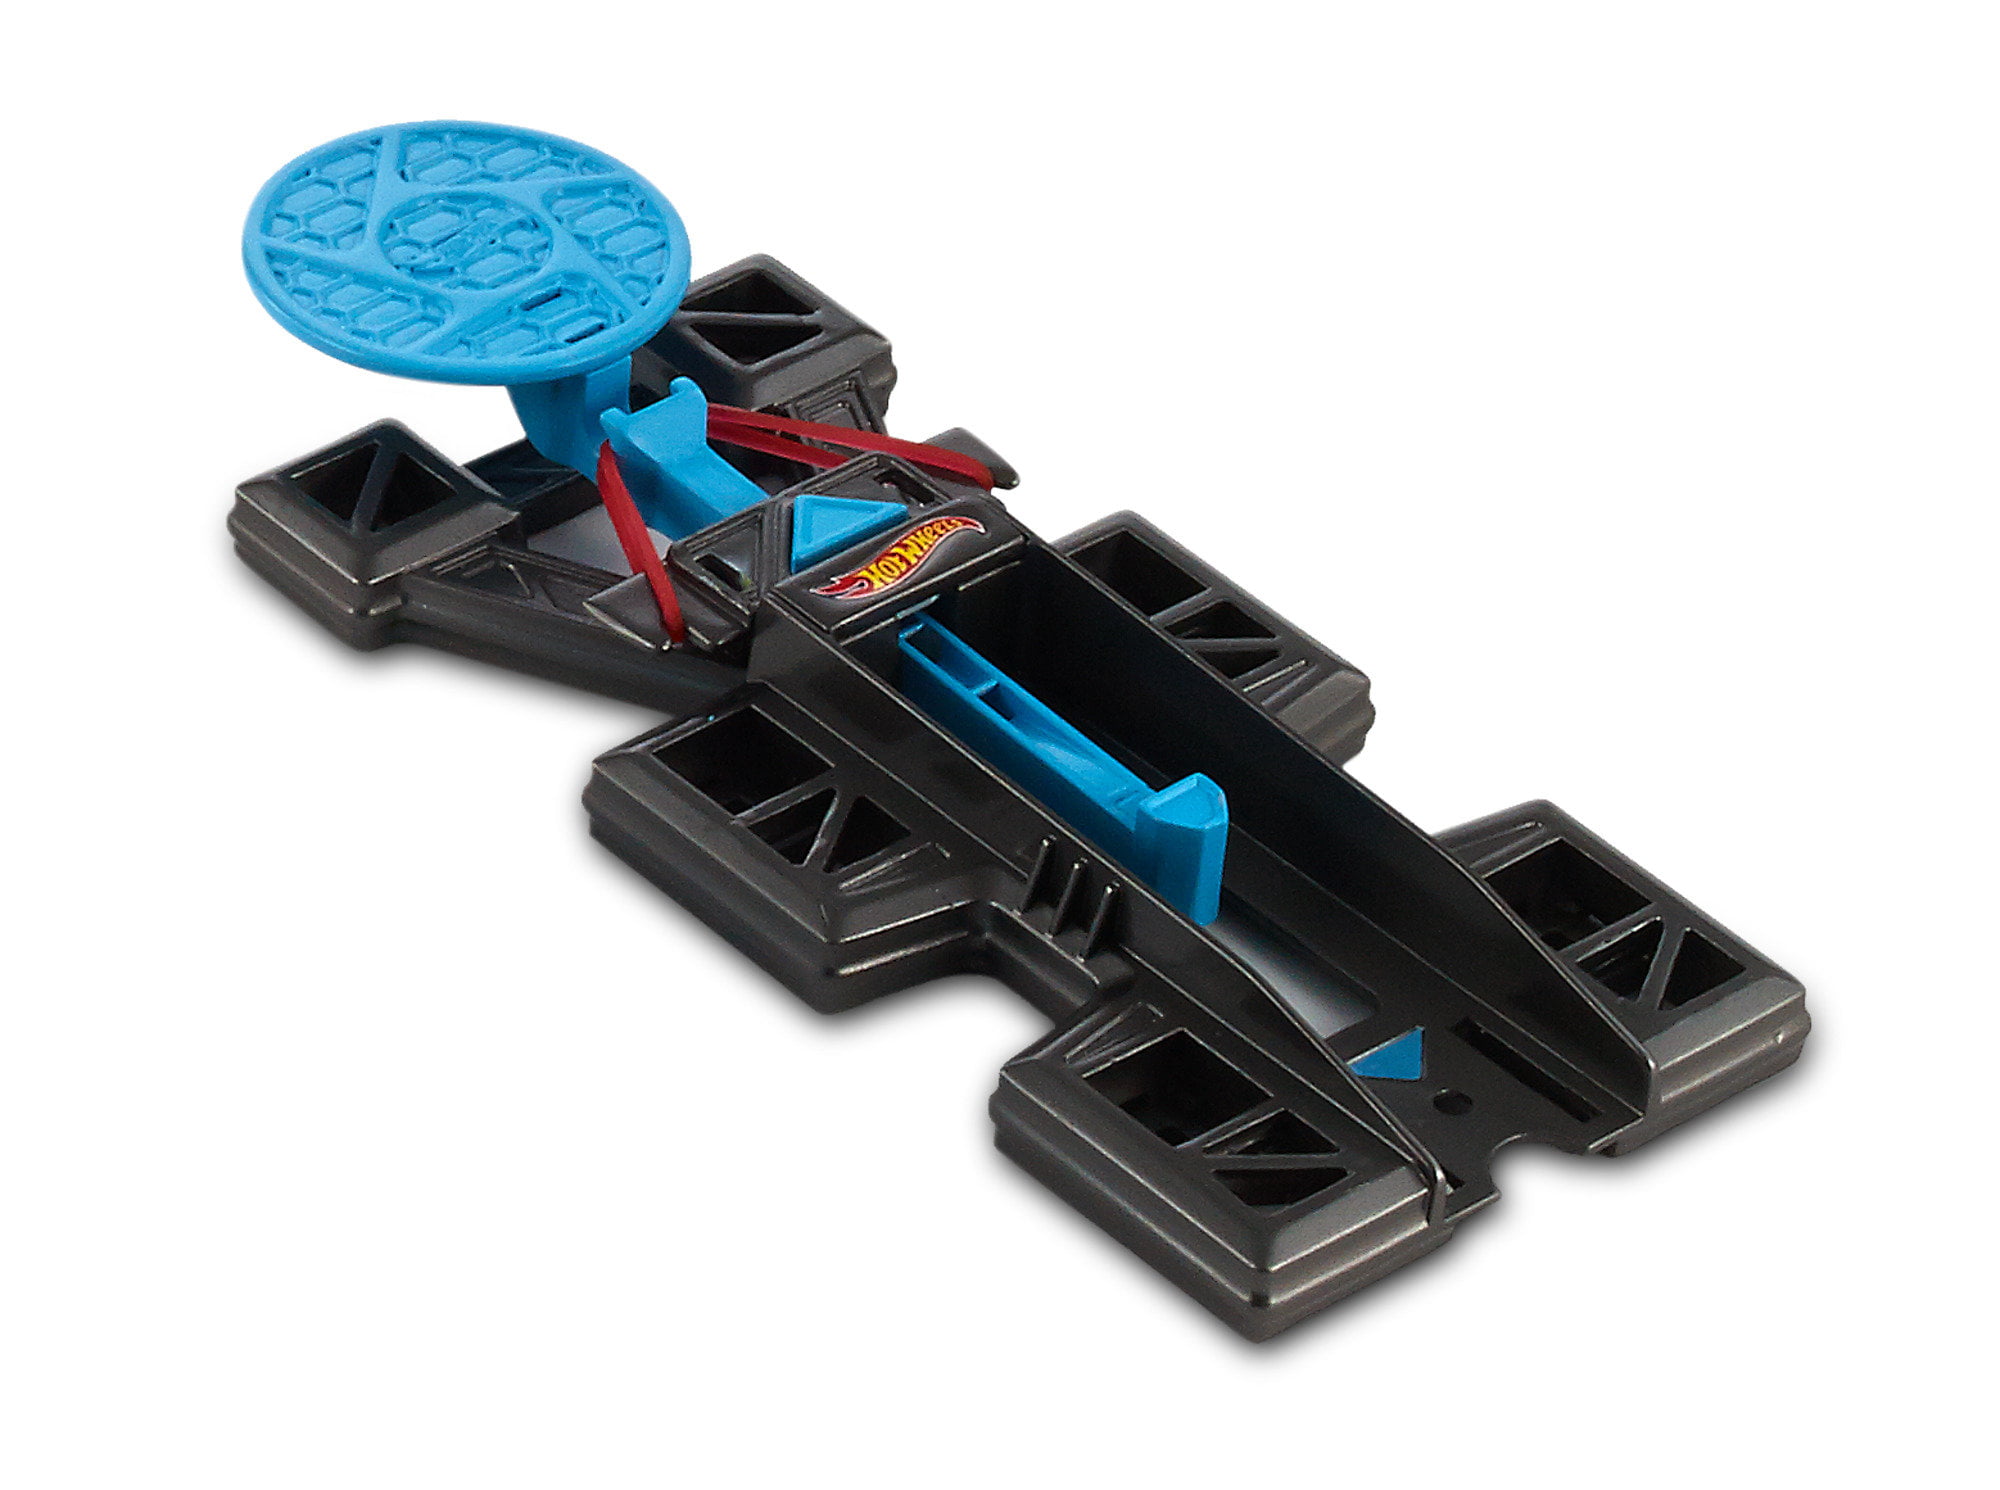 Hot Wheels - Track Builder (5Pz) – Astro Toysmx